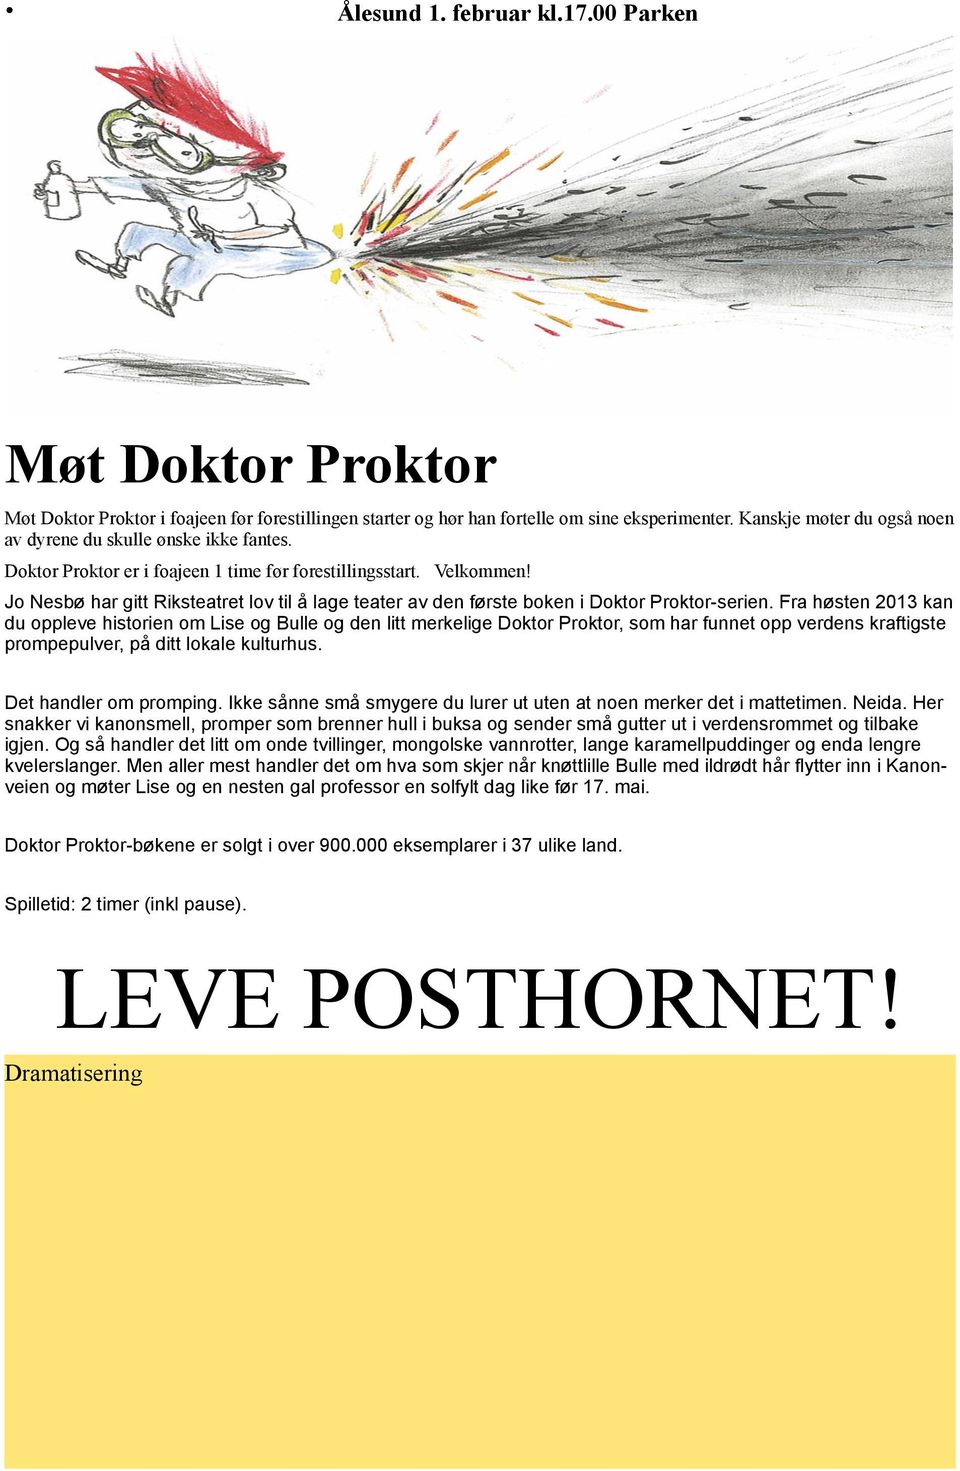 Jo Nesbø har gitt Riksteatret lov til å lage teater av den første boken i Doktor Proktor-serien.